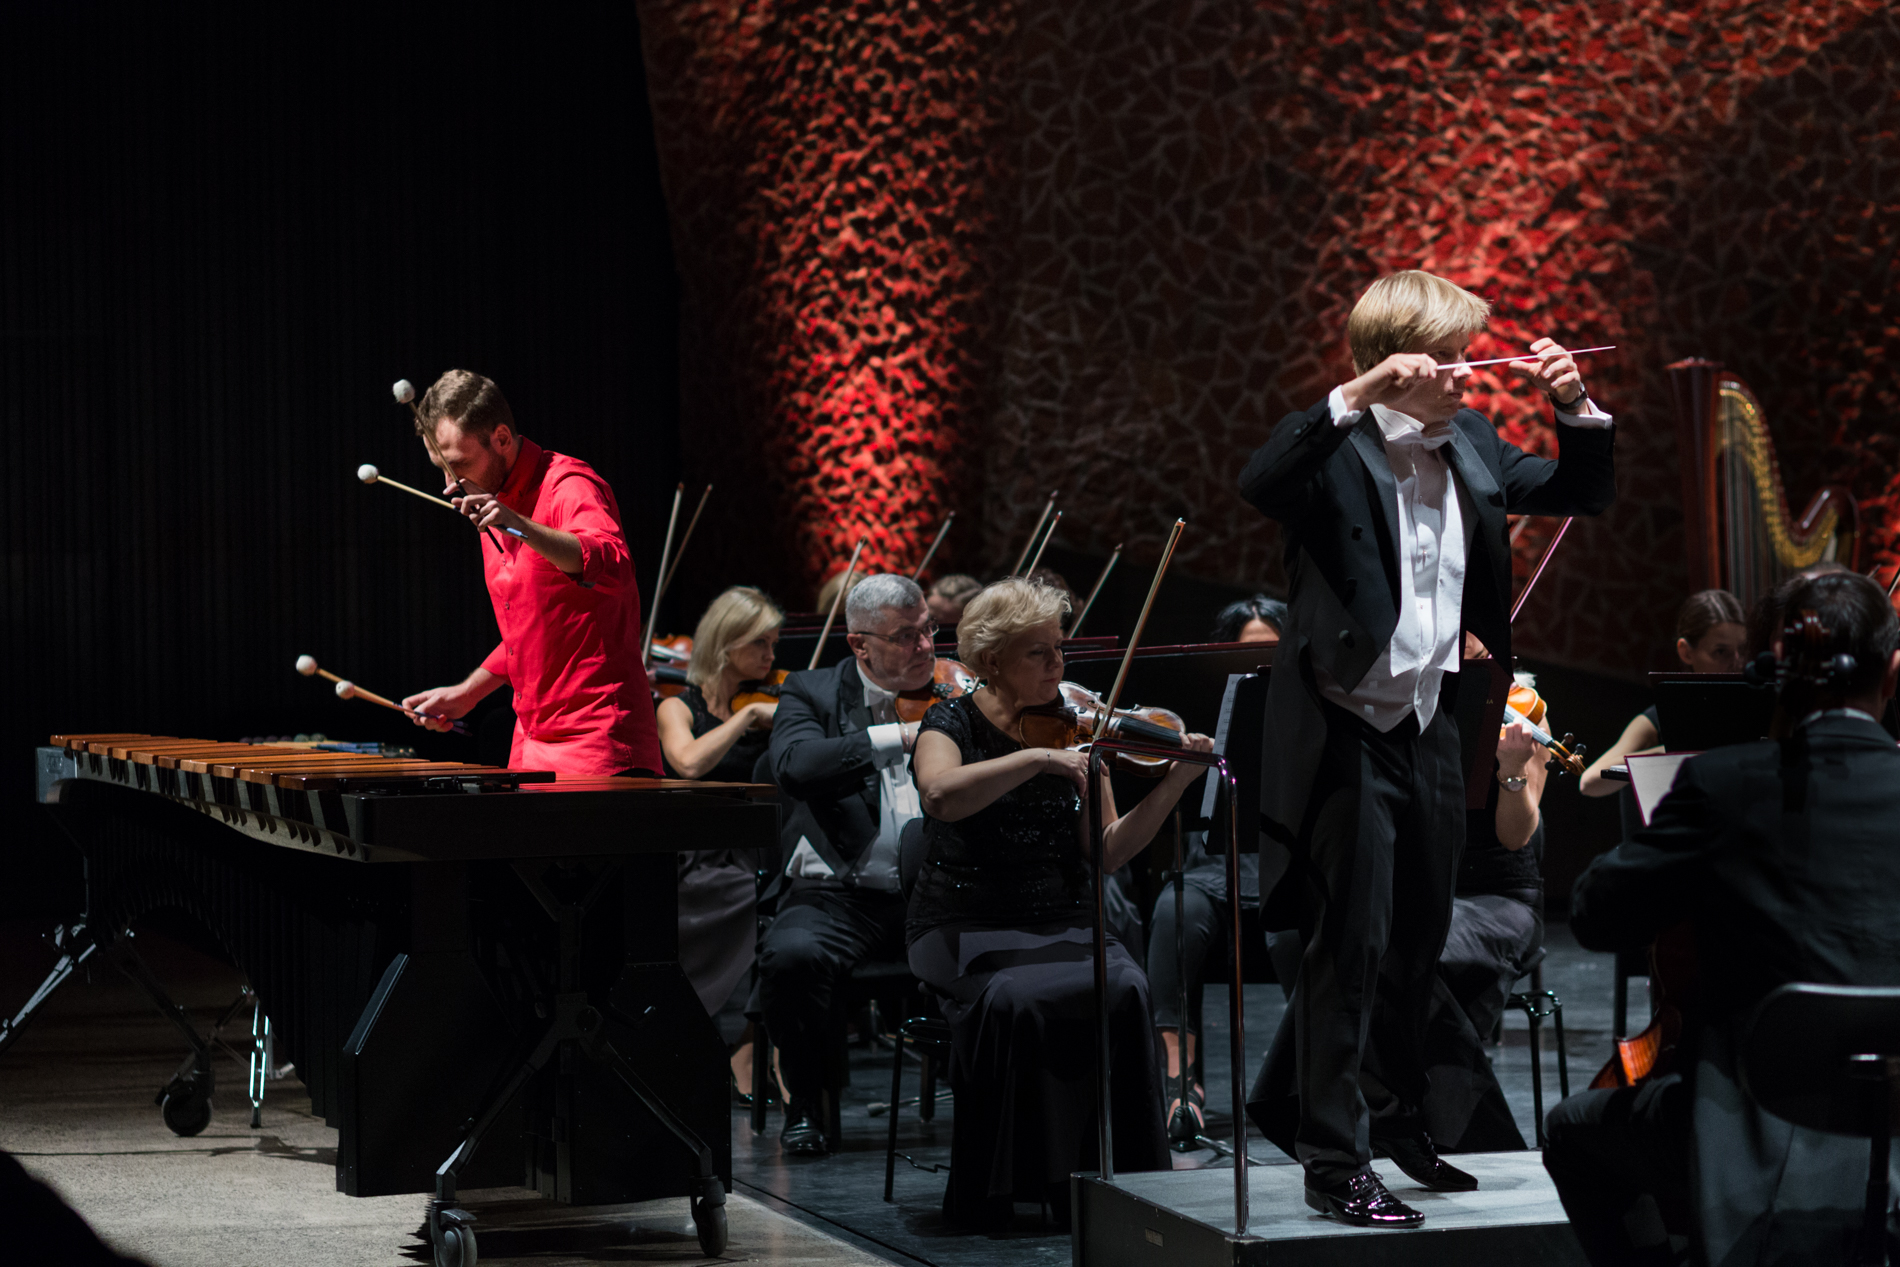 Orkiestra siedząca na scenie prowadzona przez blond dyrygenta, trzymającego batutę skierowaną do przodu. W roli solisty młody mężczyzna brunet w czerwonej koszuli grający na marimbie.